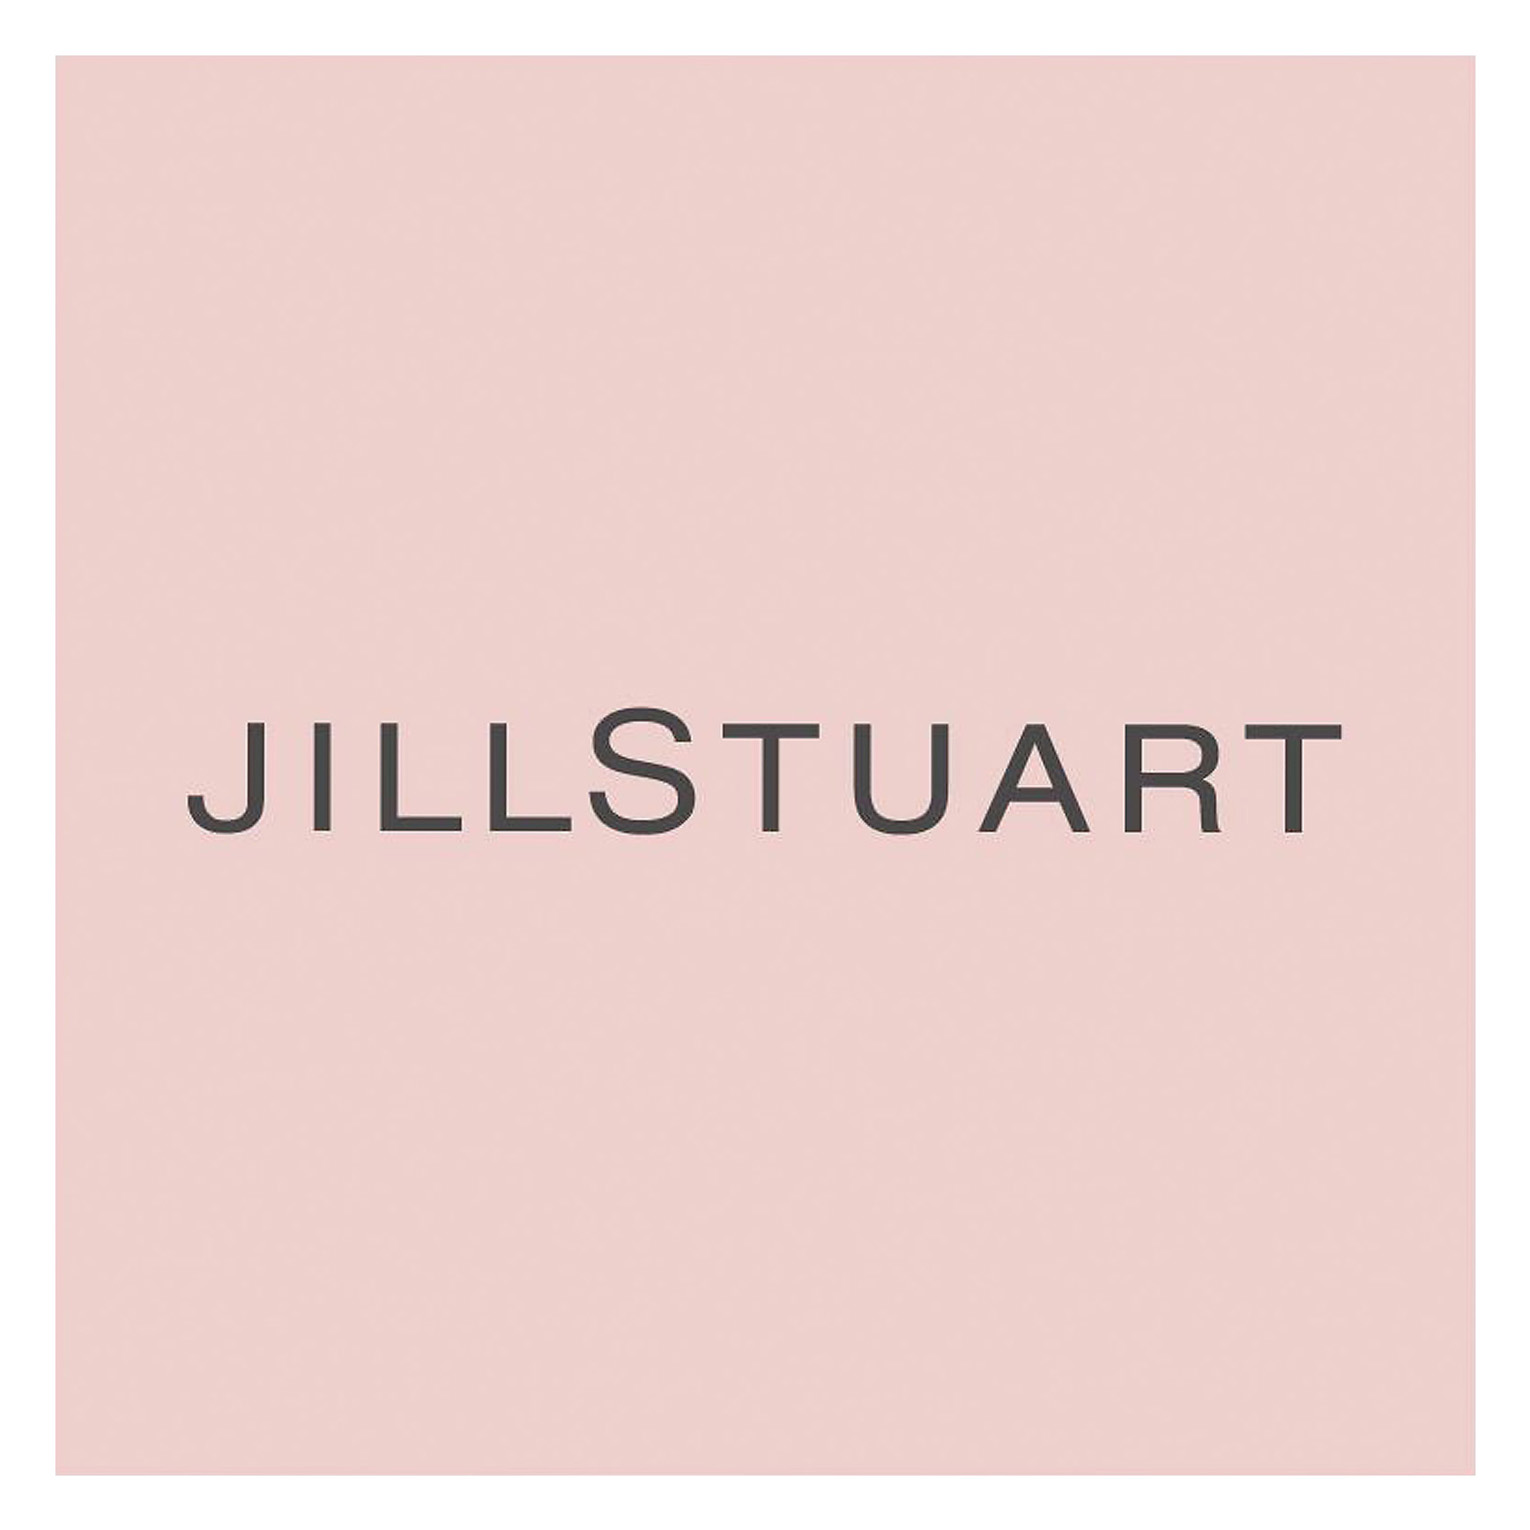 公式 Jill Stuart ジルスチュアート 美容部員 アルバイト 契約社員 採用情報 株式会社コーセー